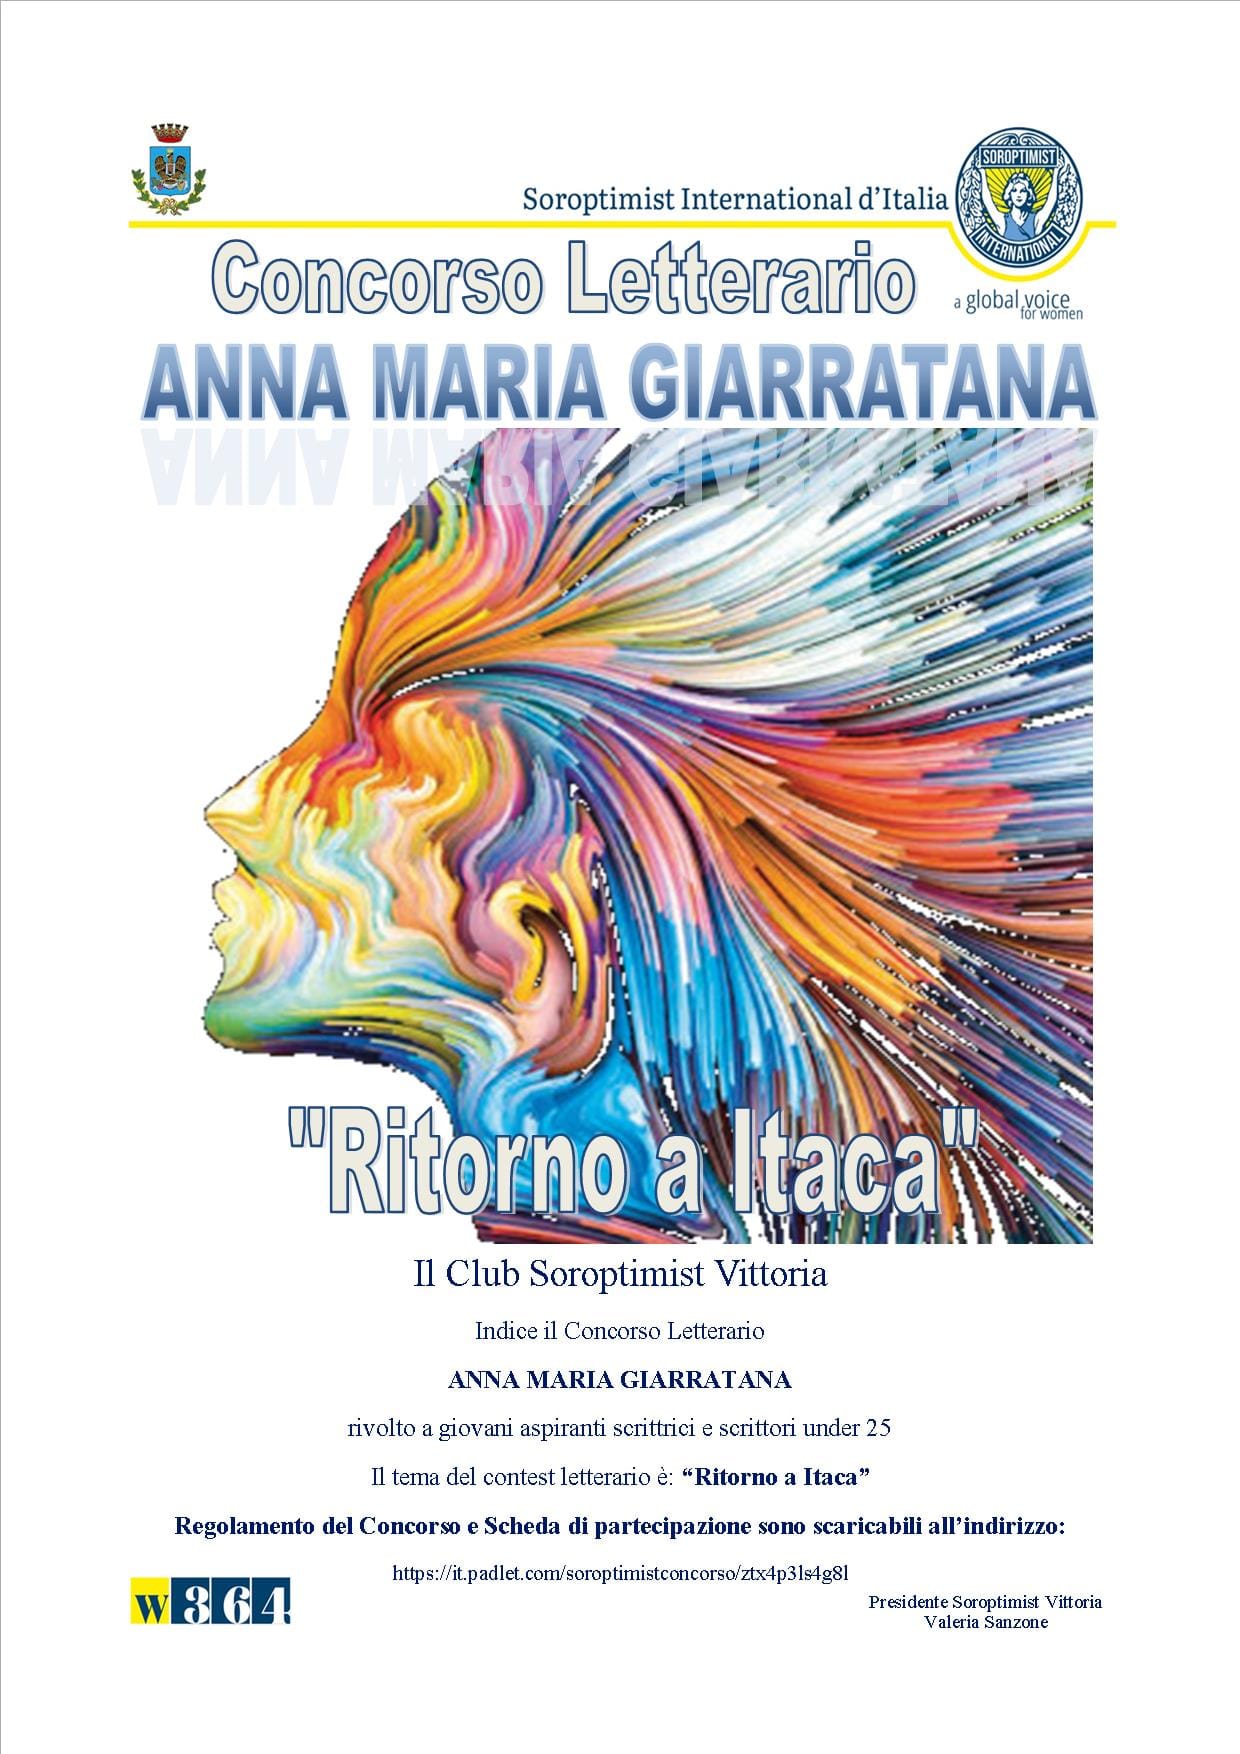 Ritorno a Itaca – Concorso letterario in memoria di Anna Maria Giarratana – Prorogata la scadenza al 30 dicembre 2020